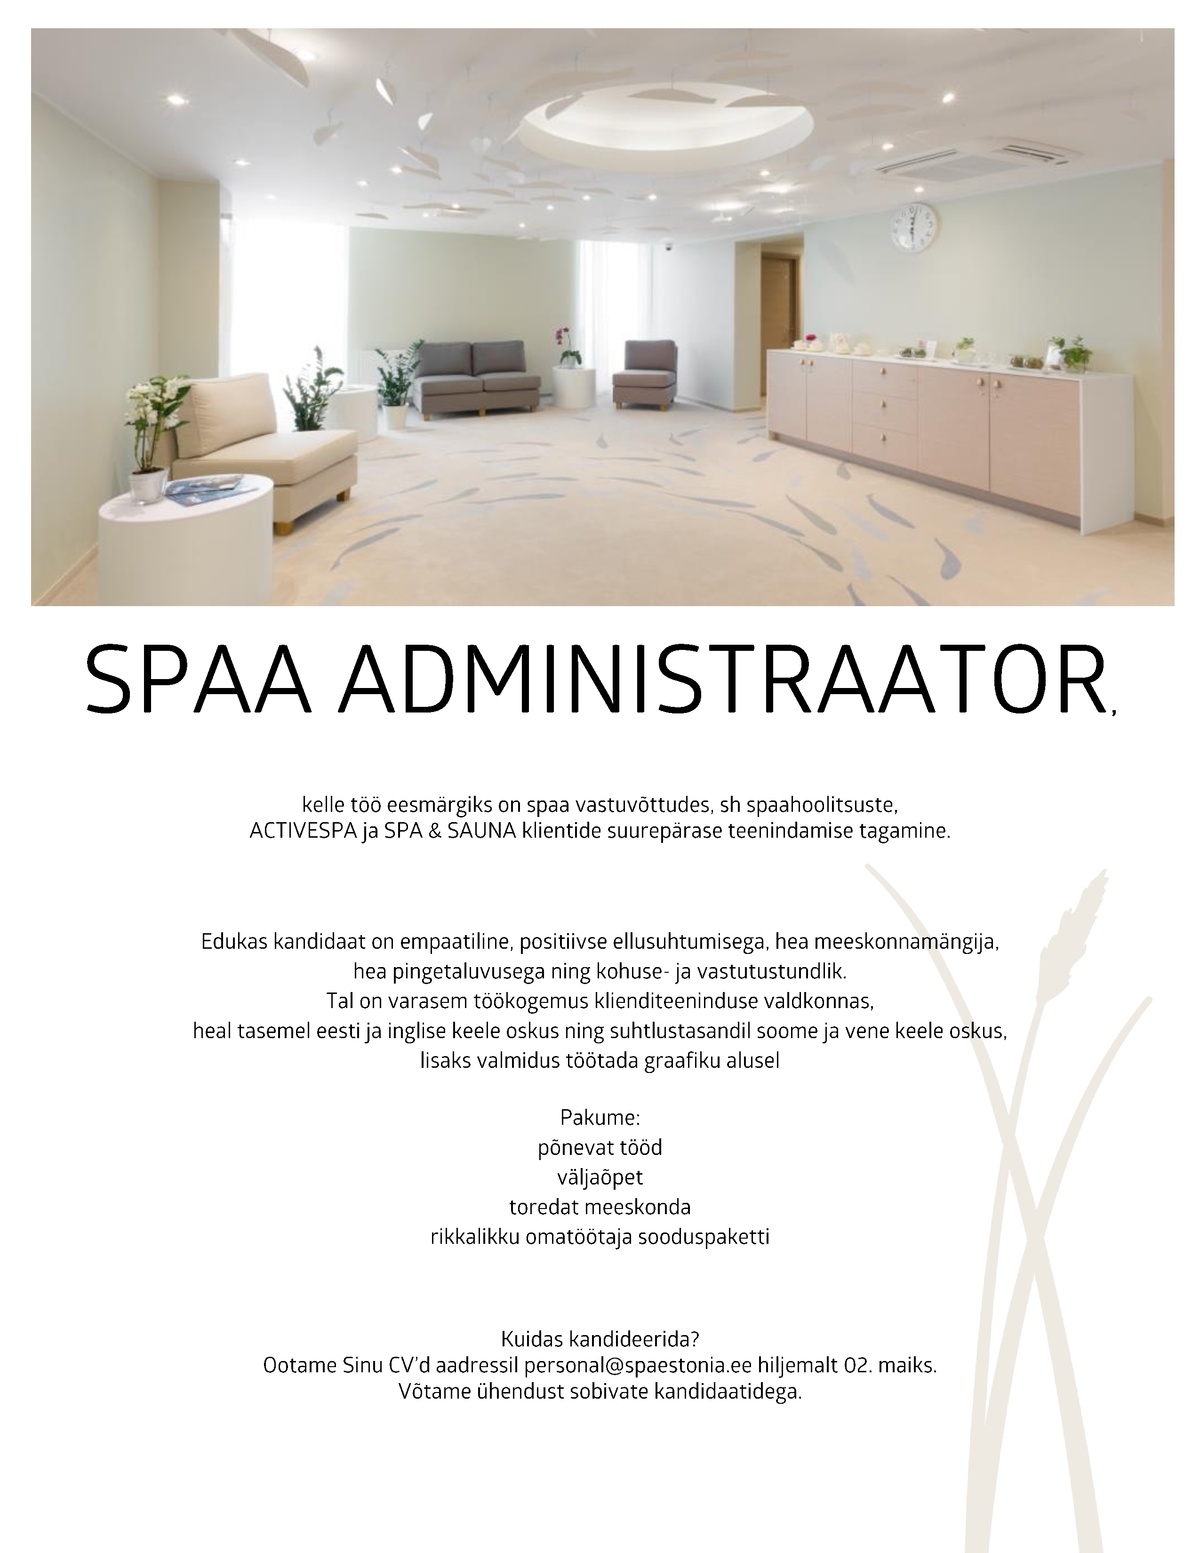 Estonia Spa Hotels AS Spaa vastuvõtuadministraator